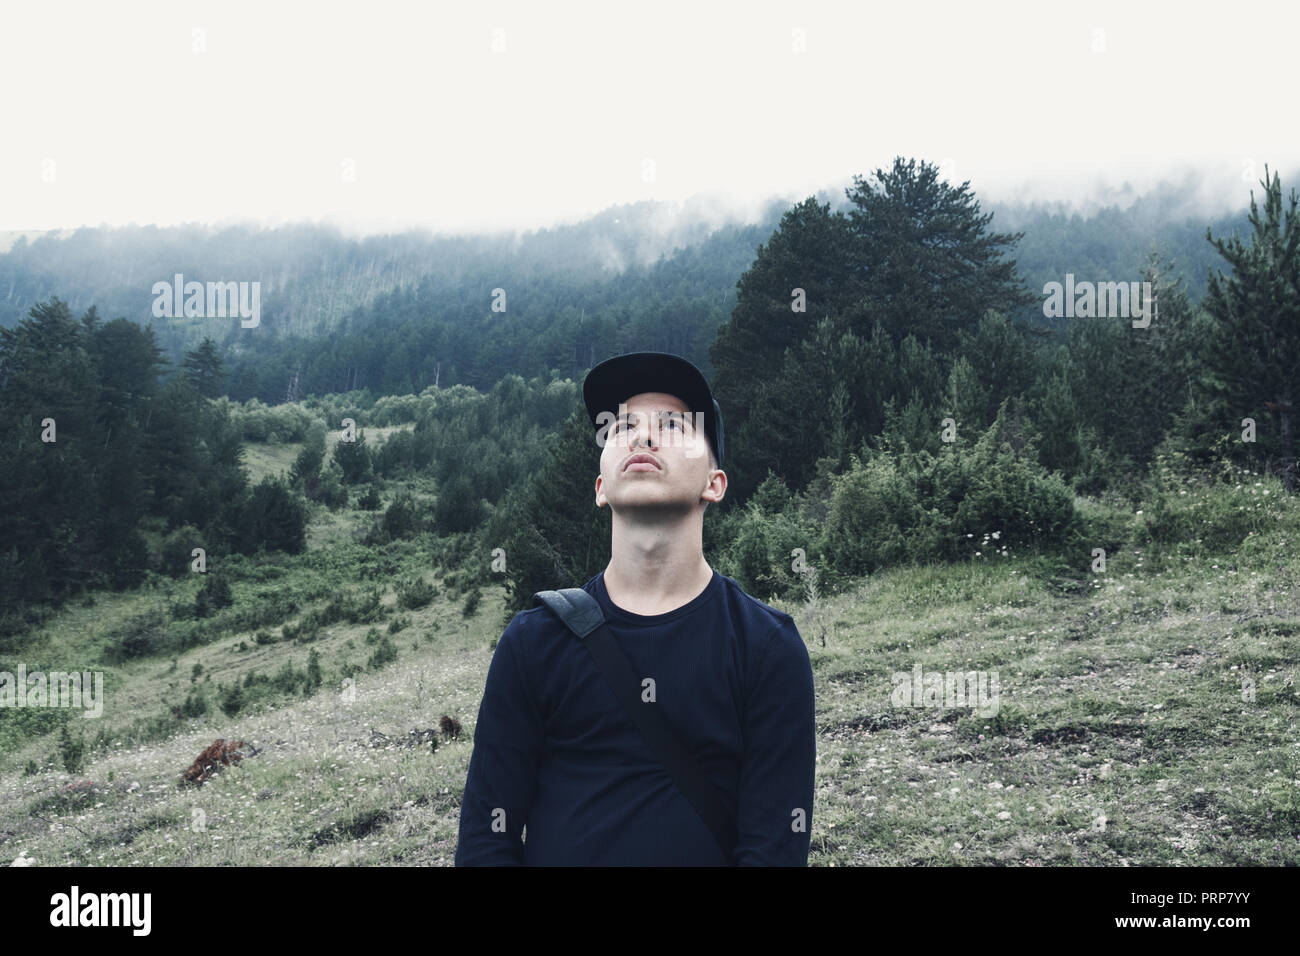 Excursionista joven mirando al cielo en frente de bosque y niebla Foto de stock